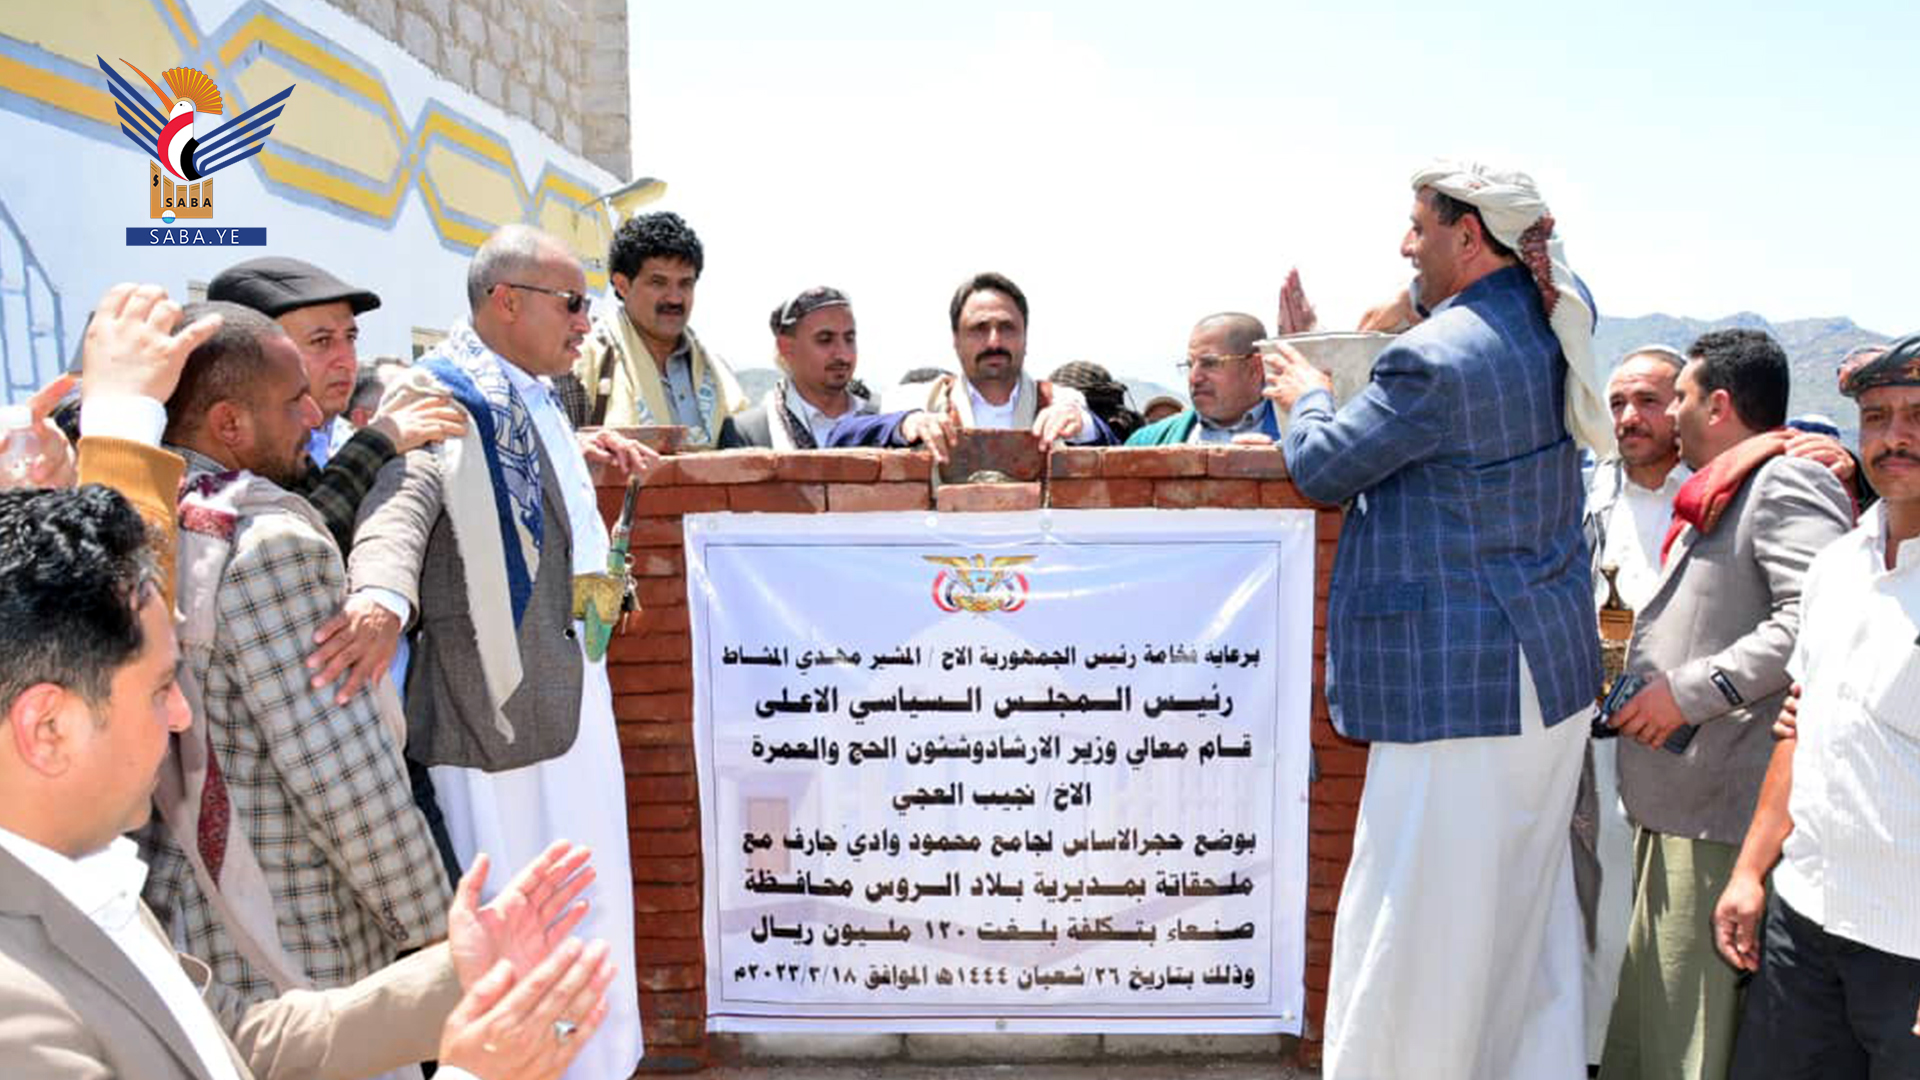 Pose de la première pierre pour la construction d'une mosquée à Wadi Jarif dans le district de Bilad Al-Rus